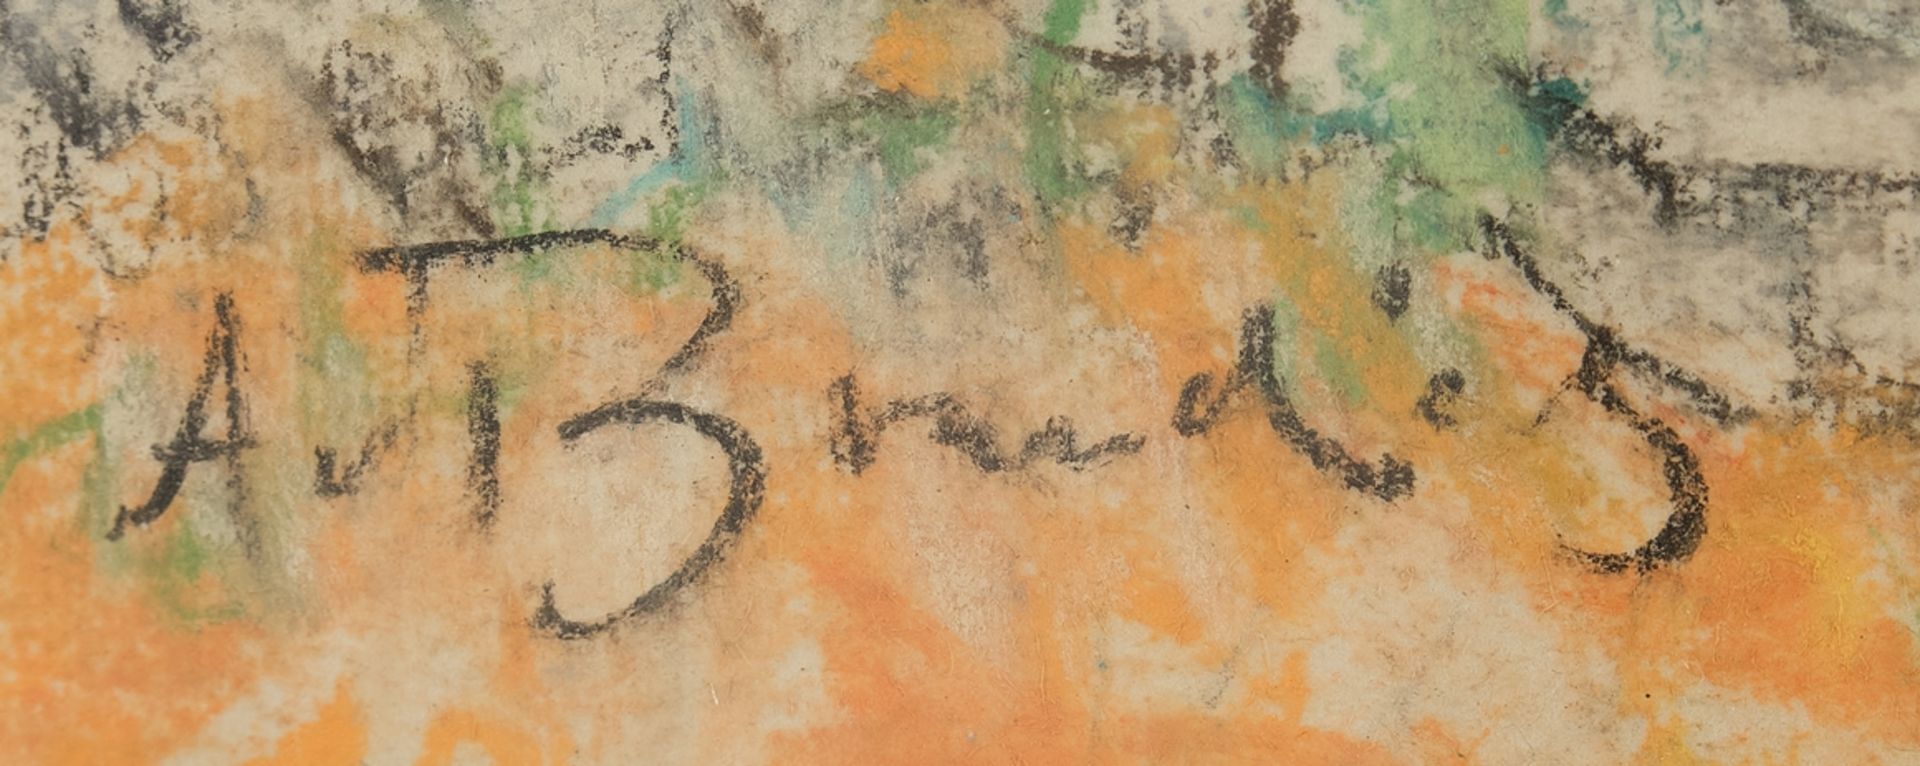 Brandis, August von (Haselhorst 1862 - 1947 Aachen, deutscher Impressionist, Interieurmaler, Studiu - Bild 3 aus 4